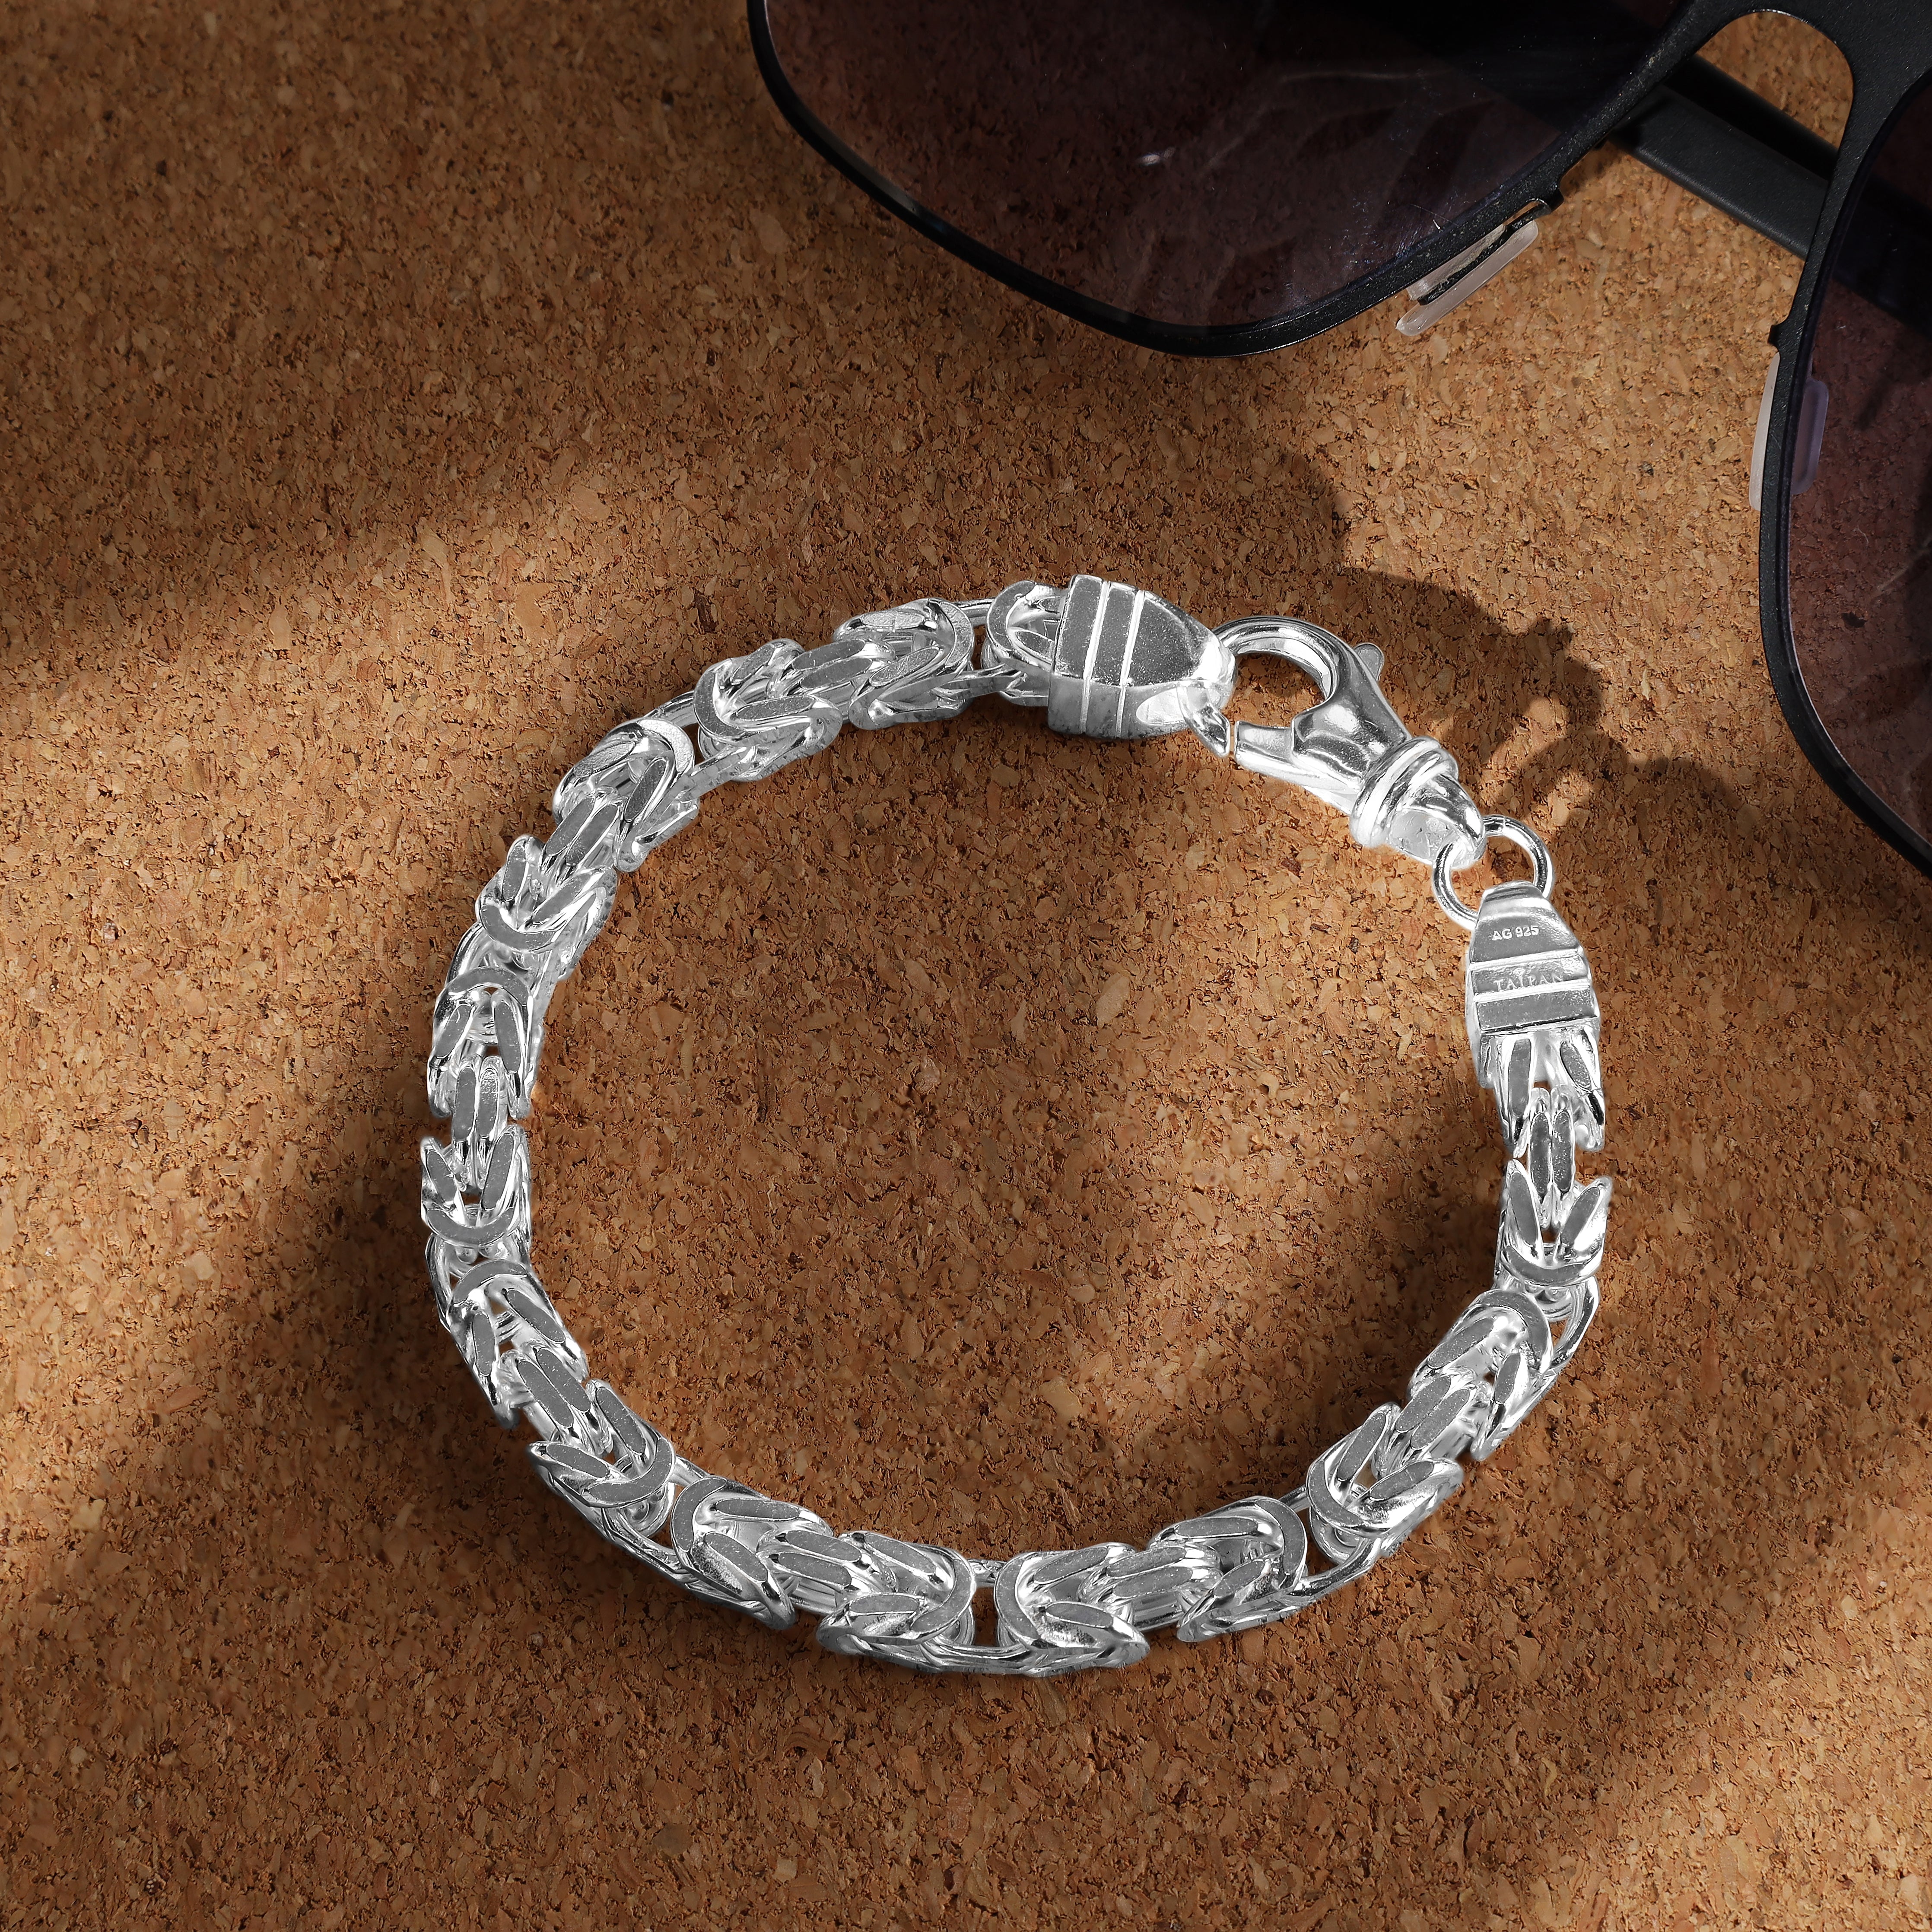 Königskette Armband Königsarmband 5mm breit 21cm lang aus 925 Sterling Silber (B276) - Taipan Schmuck